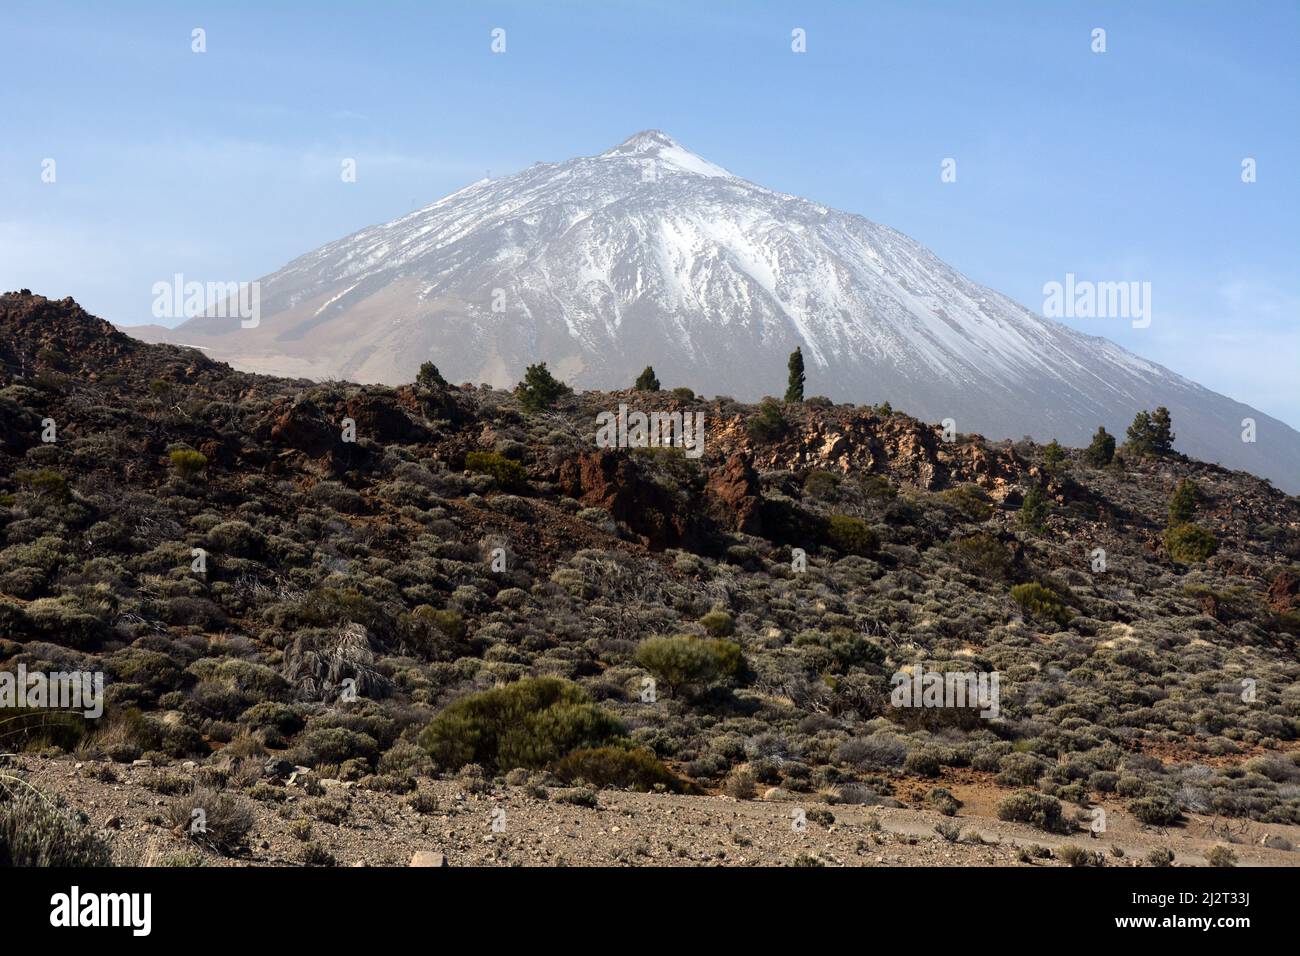 Il vulcano del Monte Teide, la vetta più alta della Spagna, nel Parco Nazionale del Teide, sull'isola atlantica di Tenerife, Isole Canarie, Spagna. Foto Stock